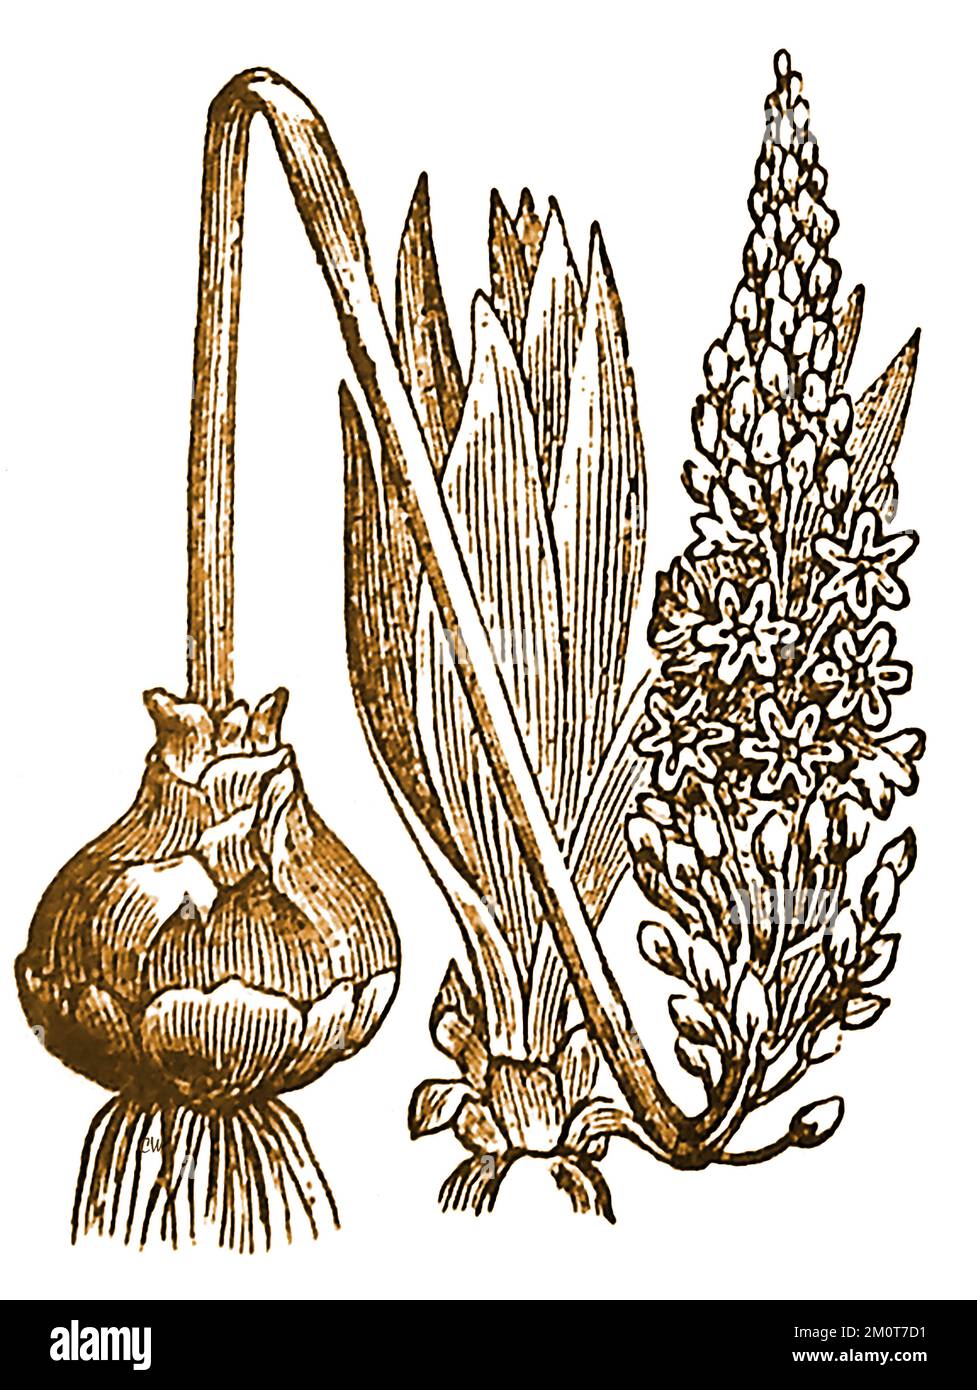 Eine Gravur aus dem 19.. Jahrhundert, die eine SQUILL- oder SCILLA-Pflanze (Scilla maritima) zeigt, obwohl sie mit Mittelmeerregionen assoziiert ist, findet man sie an der britischen Westküste. Stockfoto